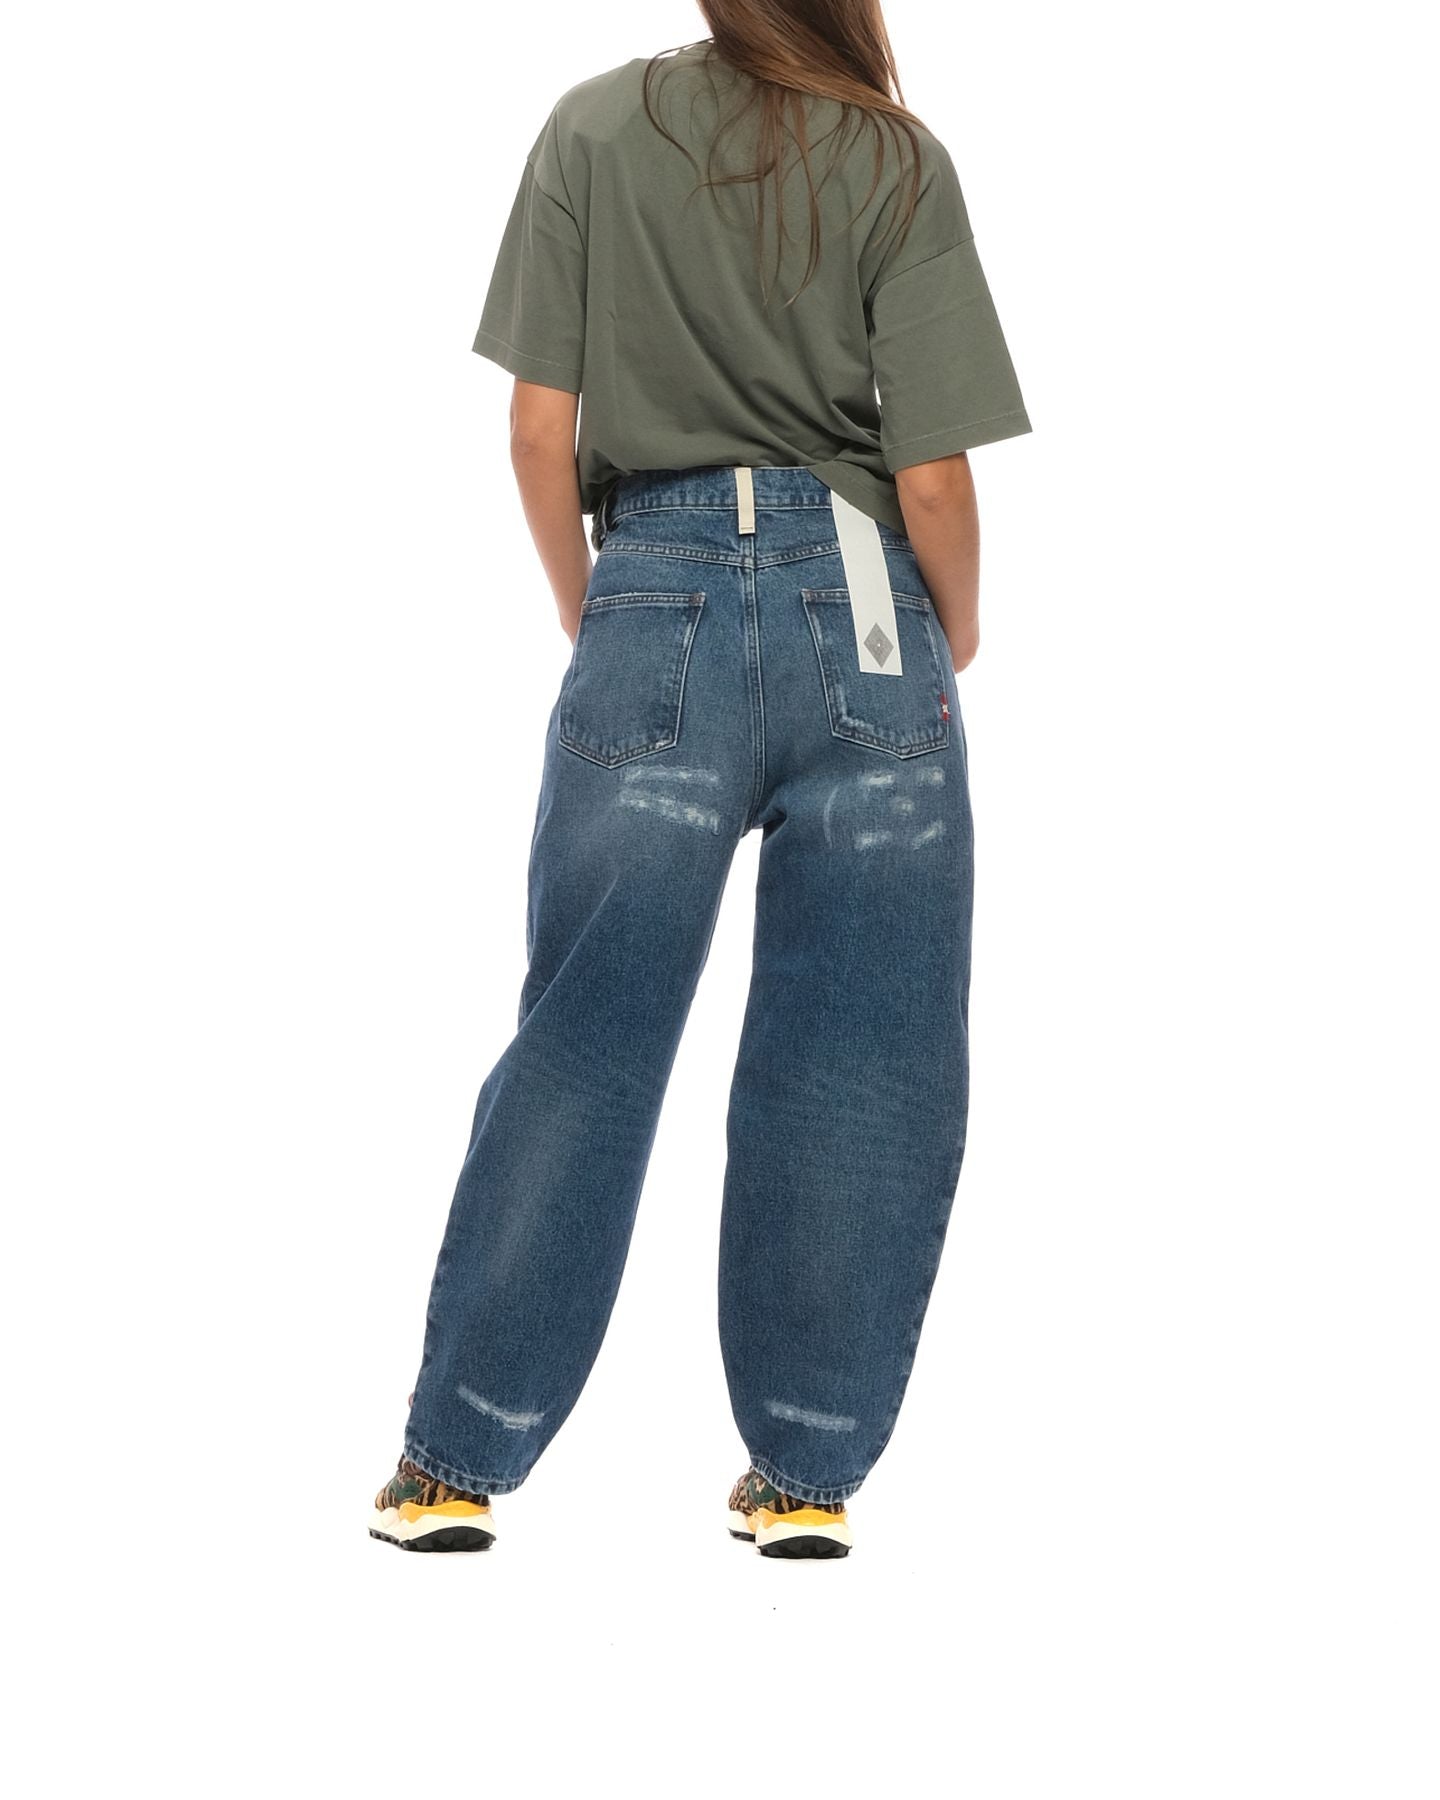 Jeans da donna AMD047D4352388 999 DENIM Amish